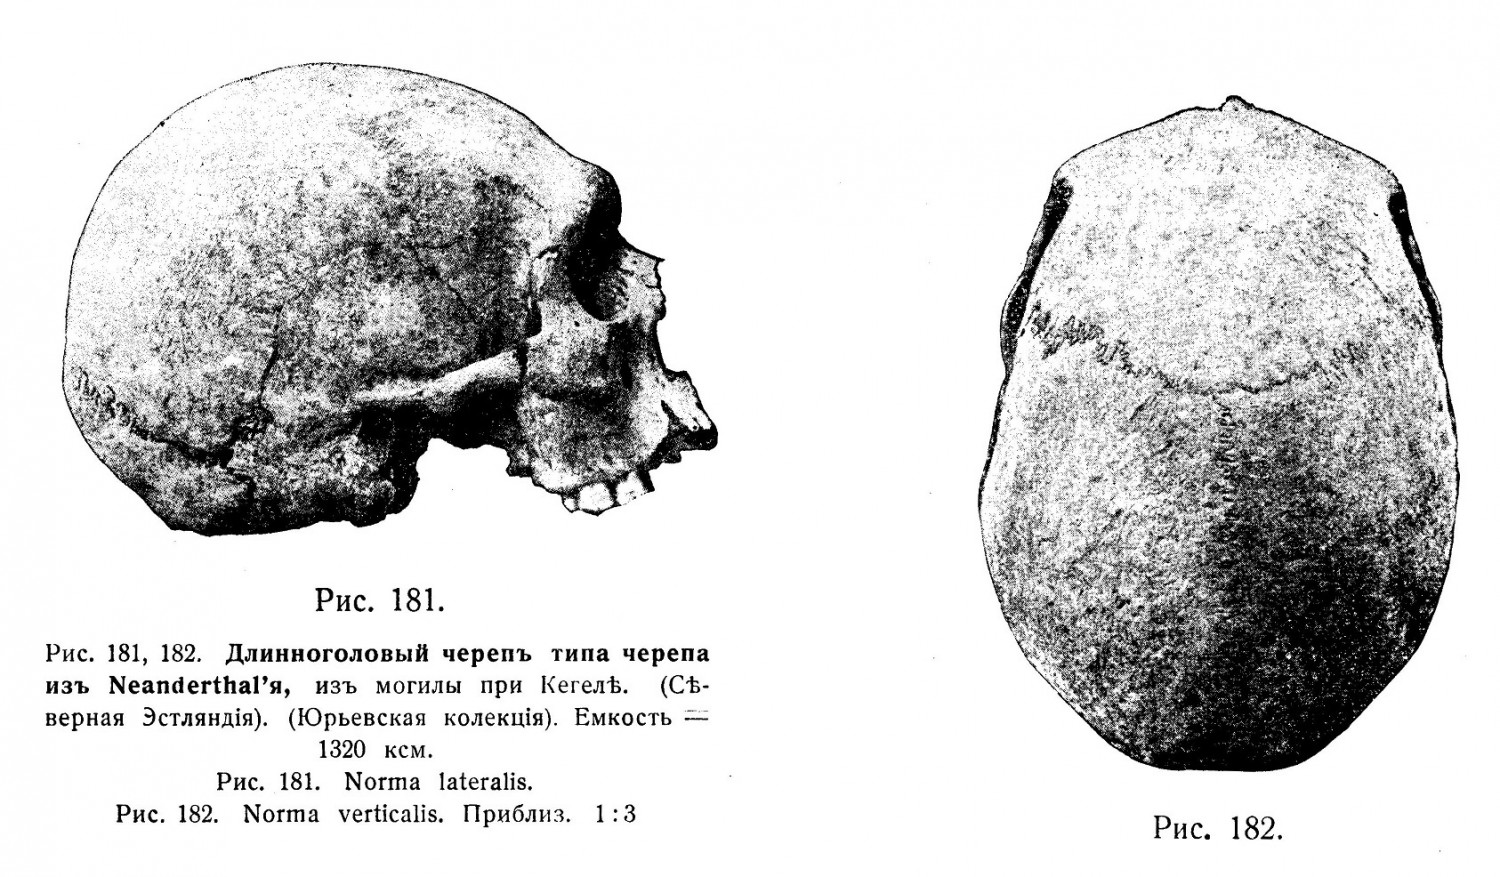 Длинноголовый черепъ типа черепа